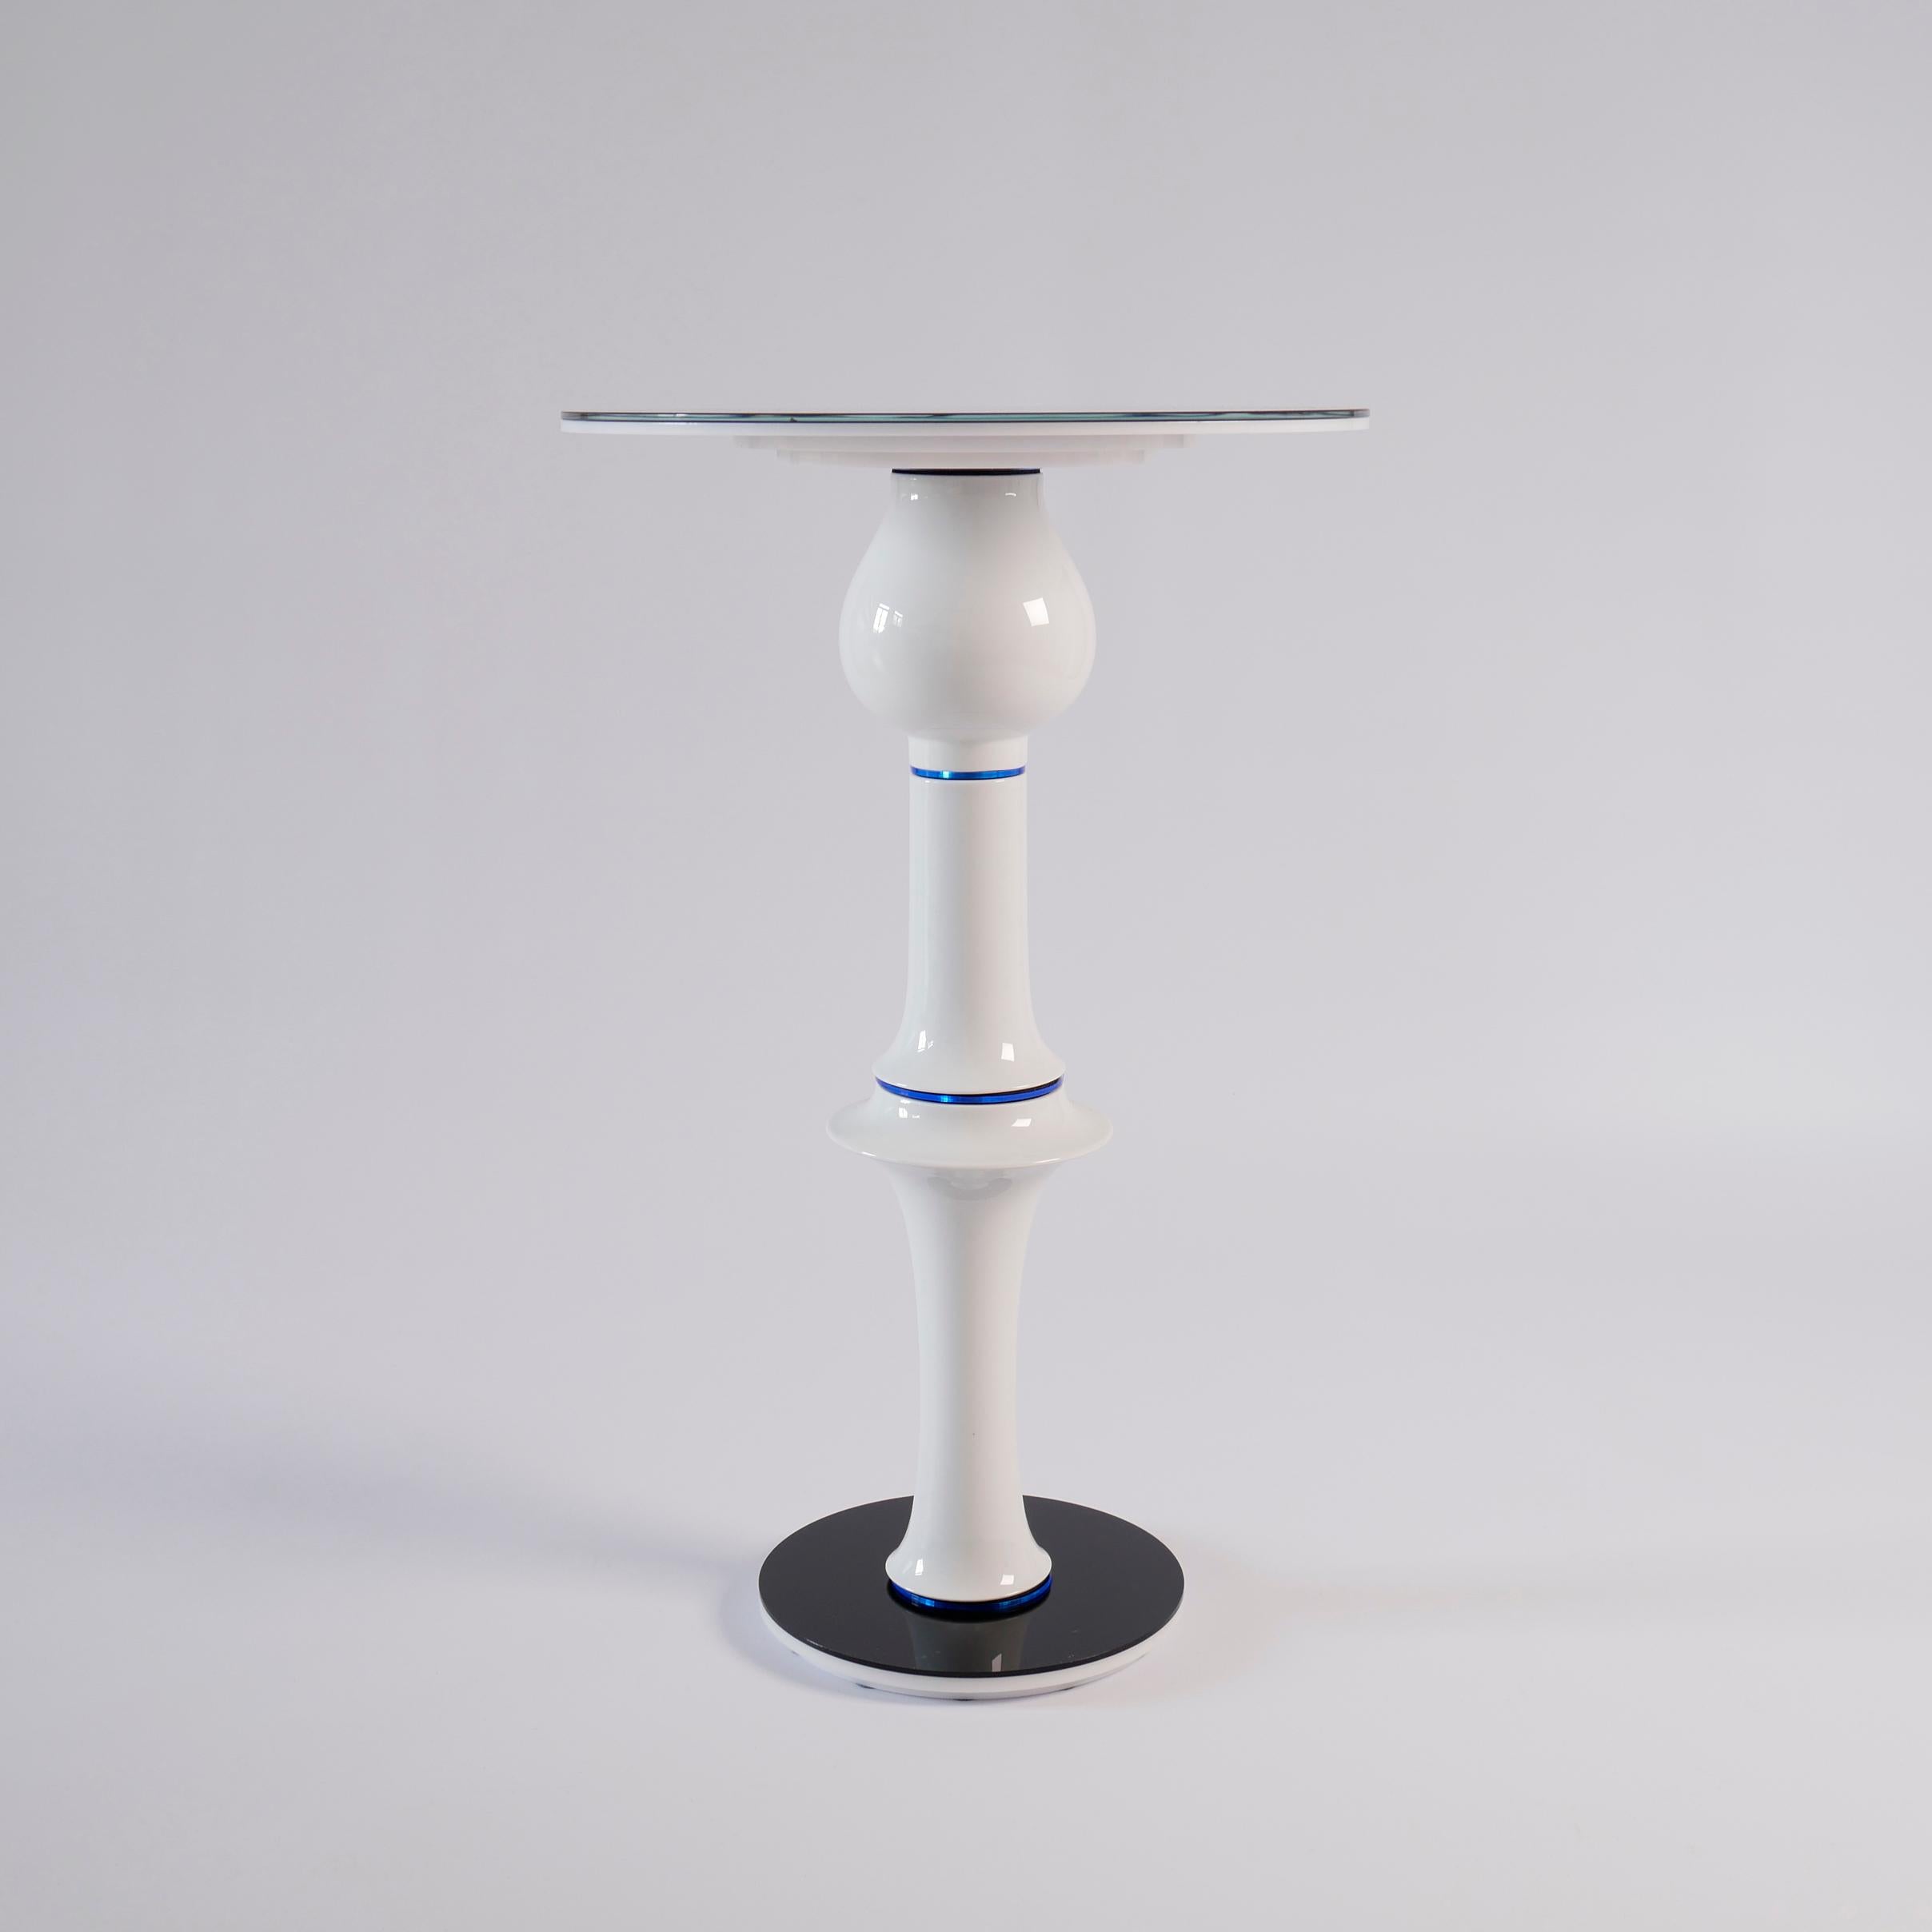 Le designer et artiste Andreas Berlin a créé une collection de tables d'appoint extraordinaires. Ces tables sont des sculptures et des tables de recyclage utiles et haut de gamme. Les vases trouvés dans les magasins d'antiquités connaissent une